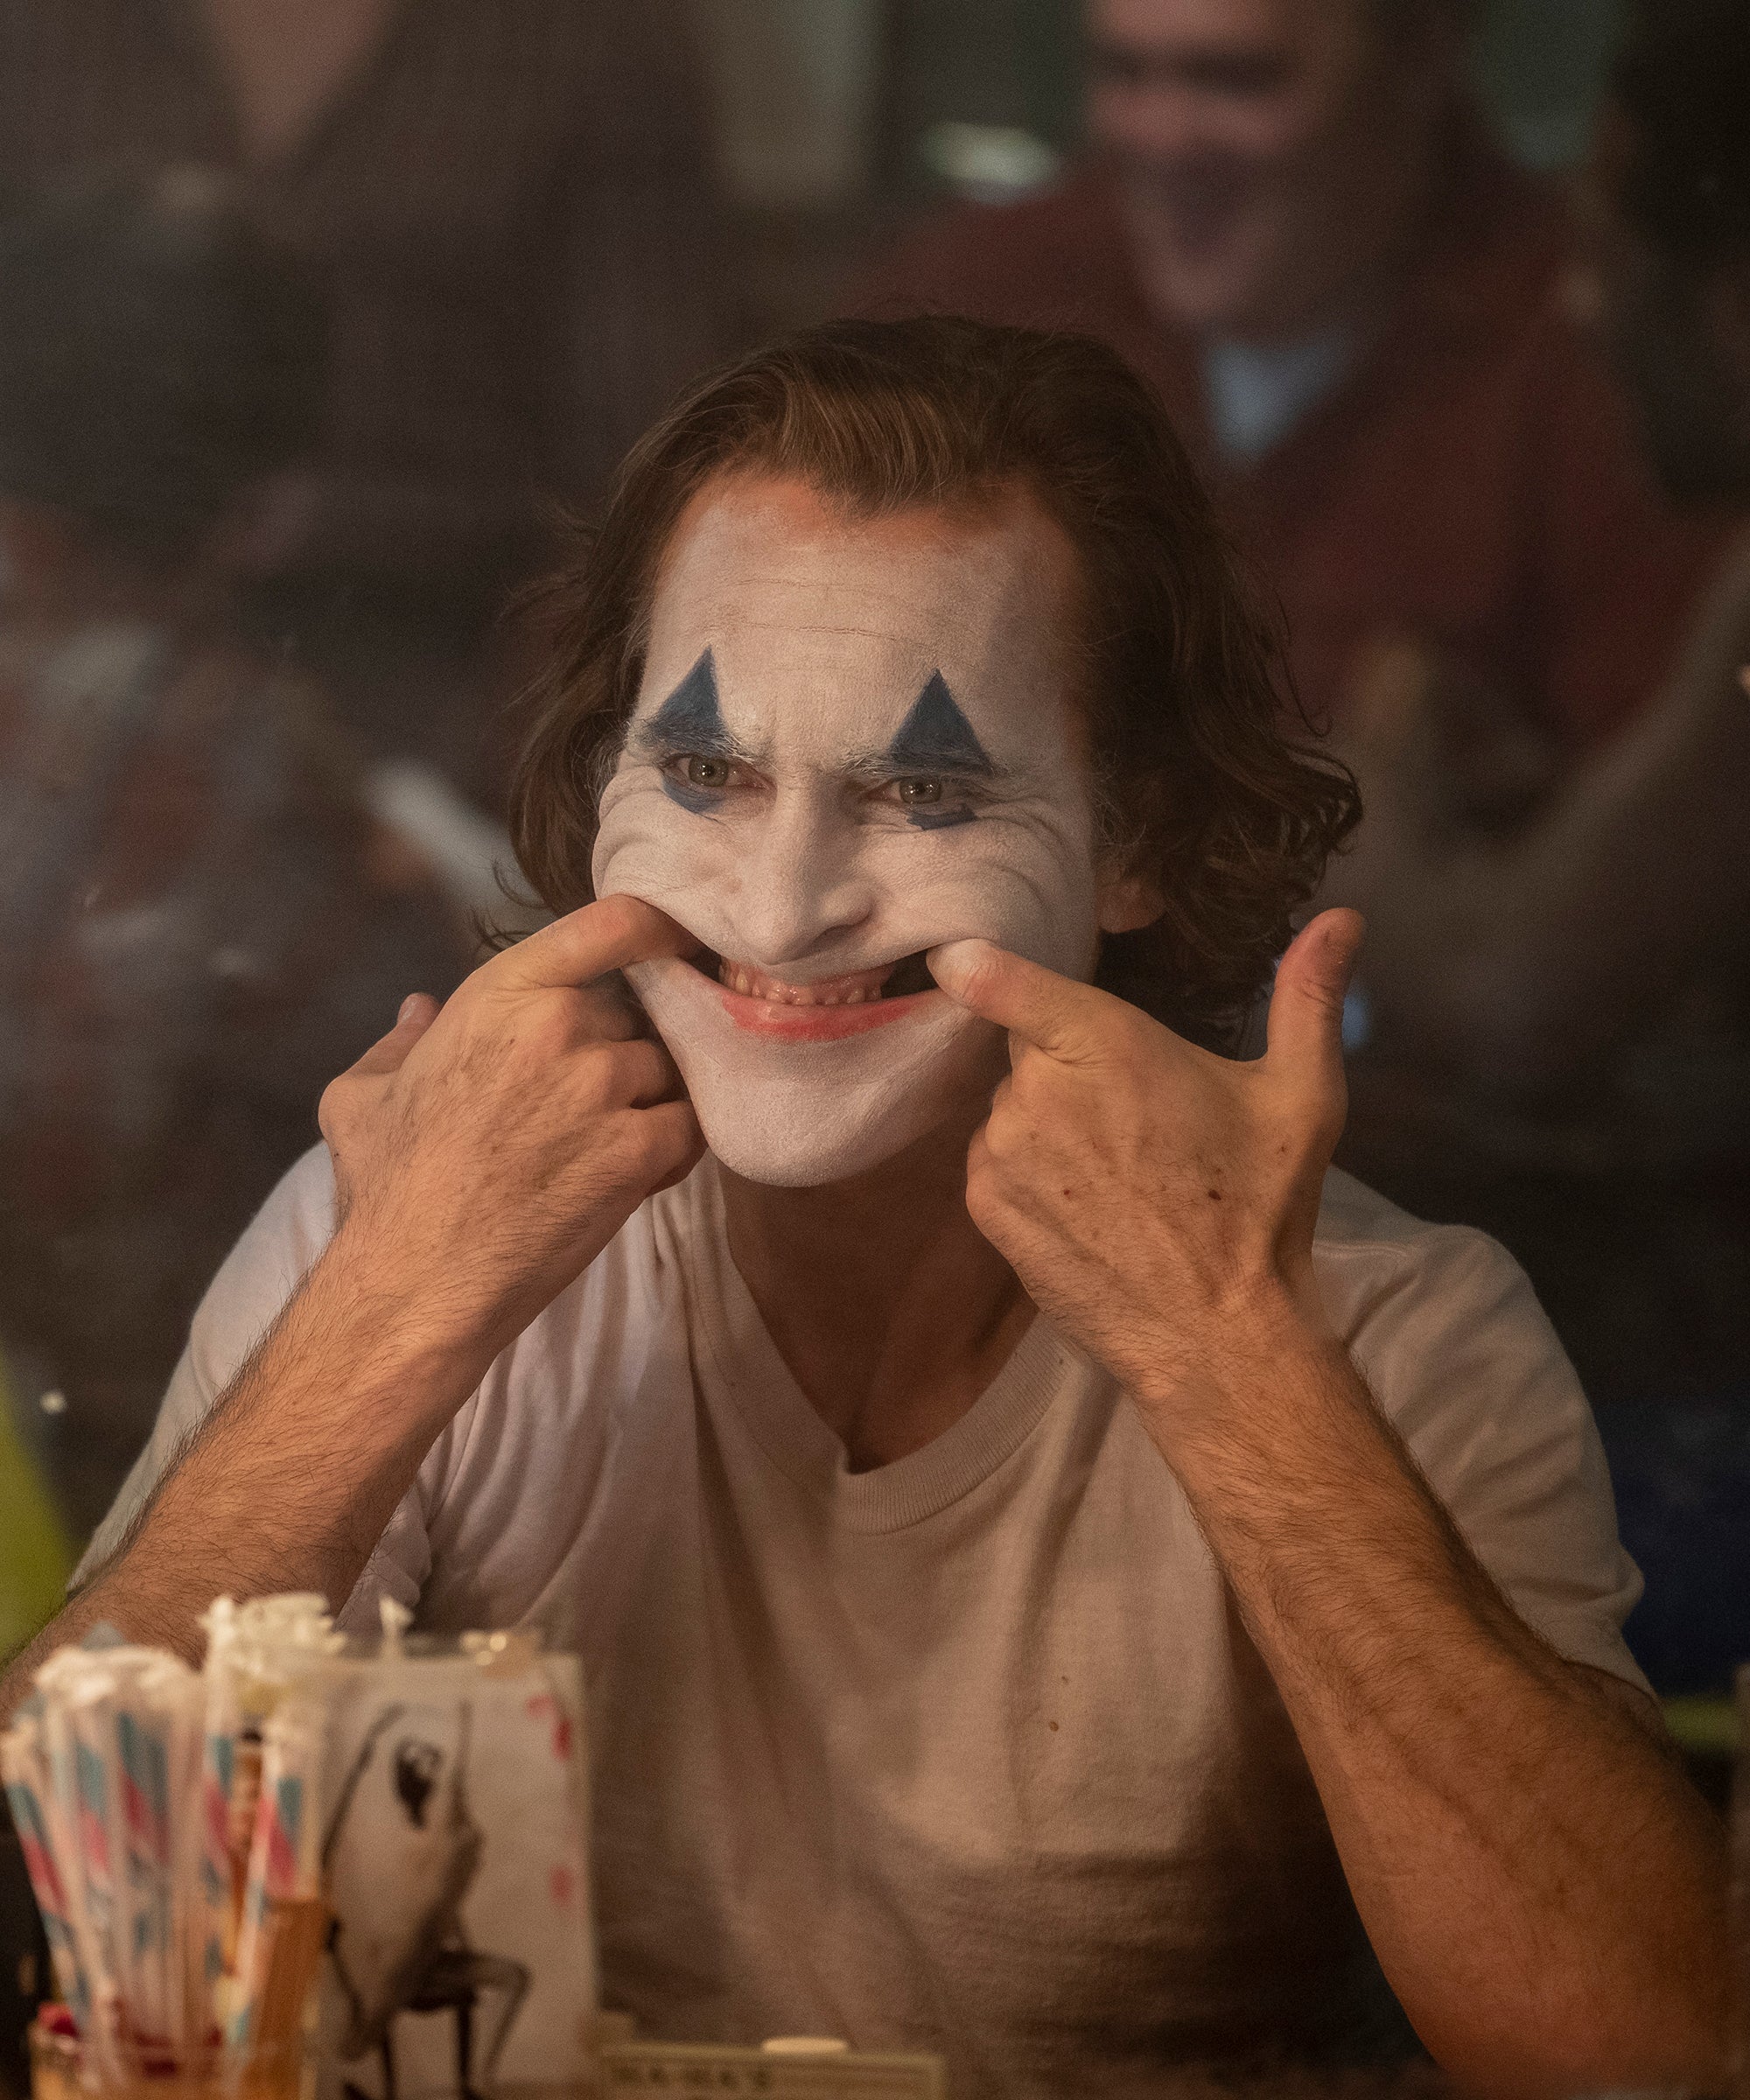 TIFF 2019 Joker Is A Dangerous Film,